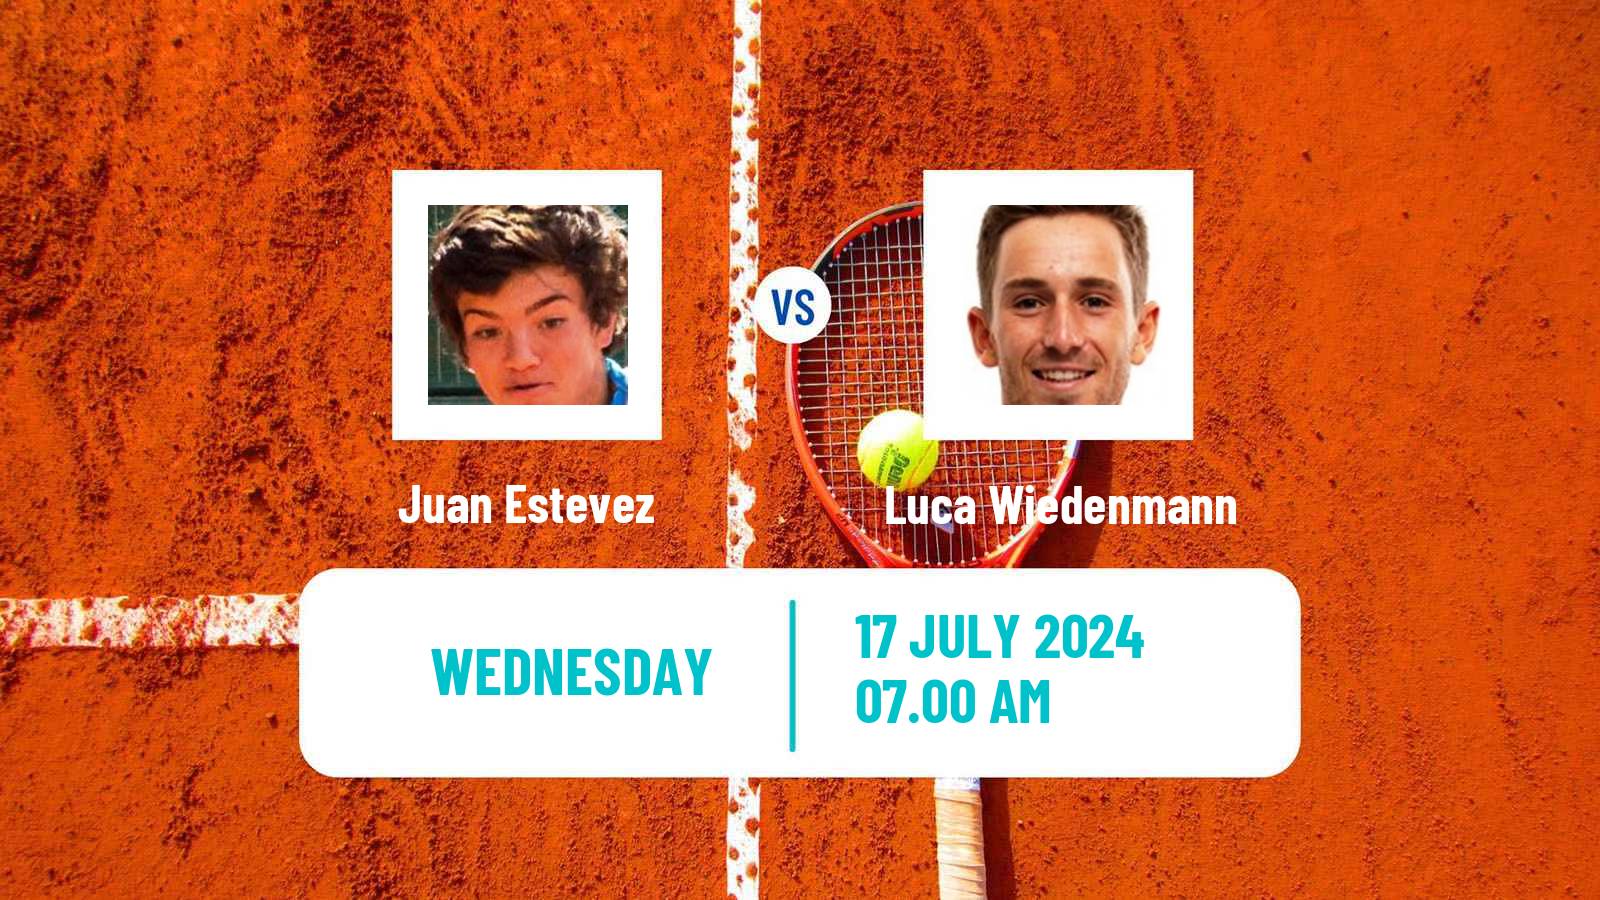 Tennis ITF M15 Slovenska Bistrica Men Juan Estevez - Luca Wiedenmann